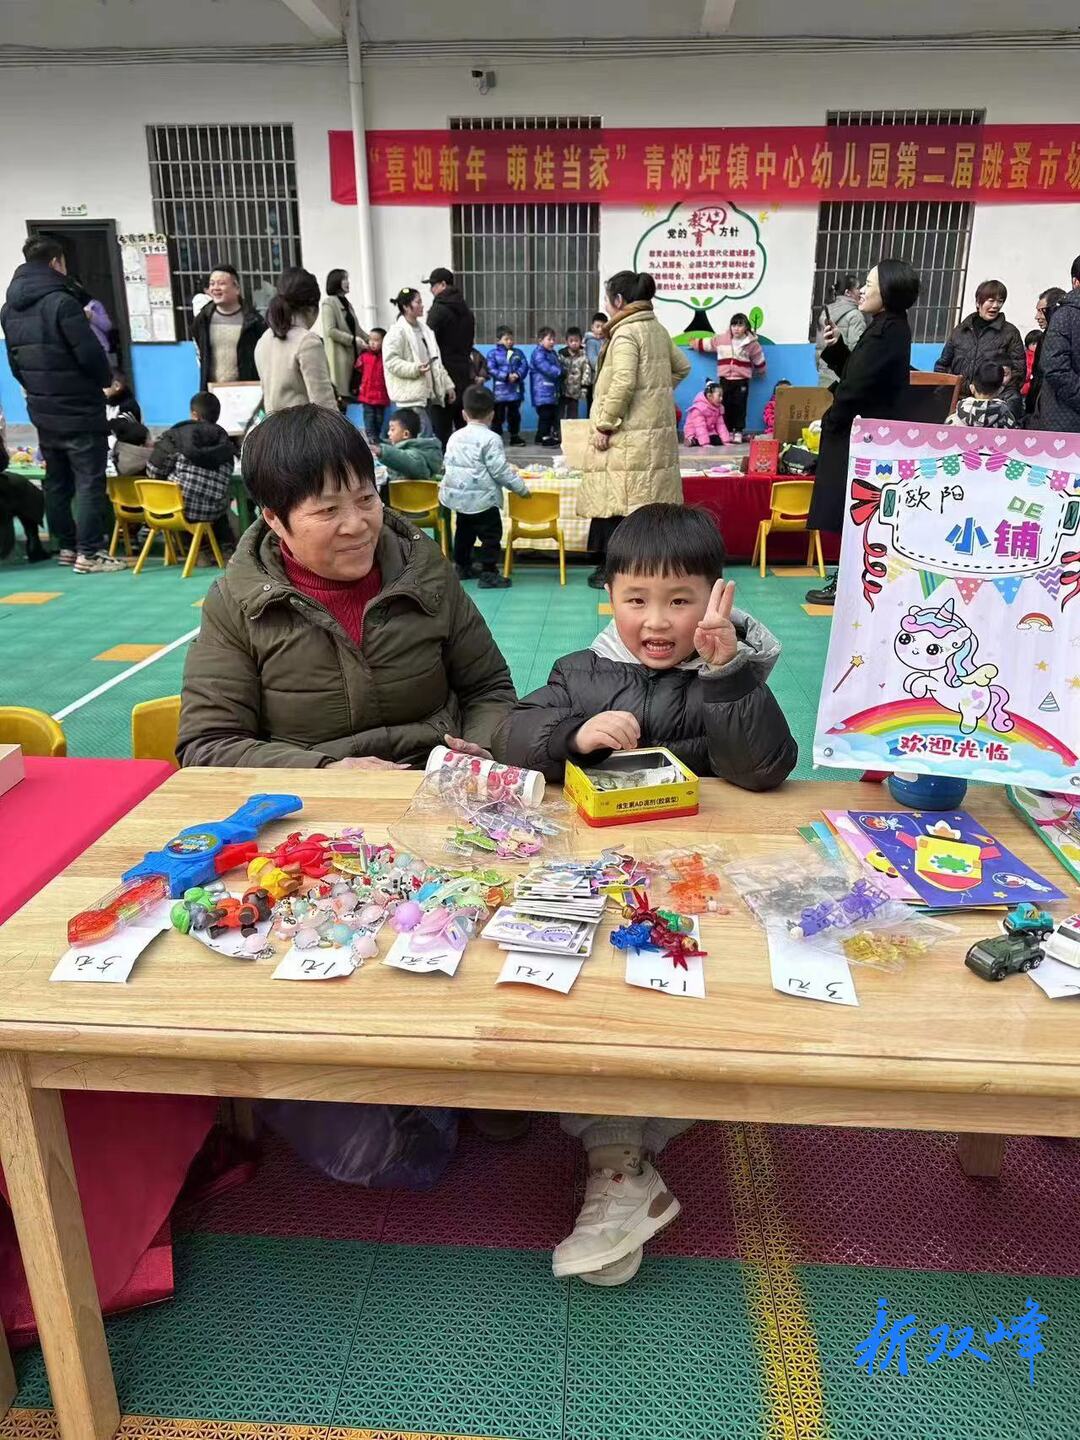 喜迎新年 萌娃当家——青树坪镇中心幼儿园举行第二届跳蚤市场活动